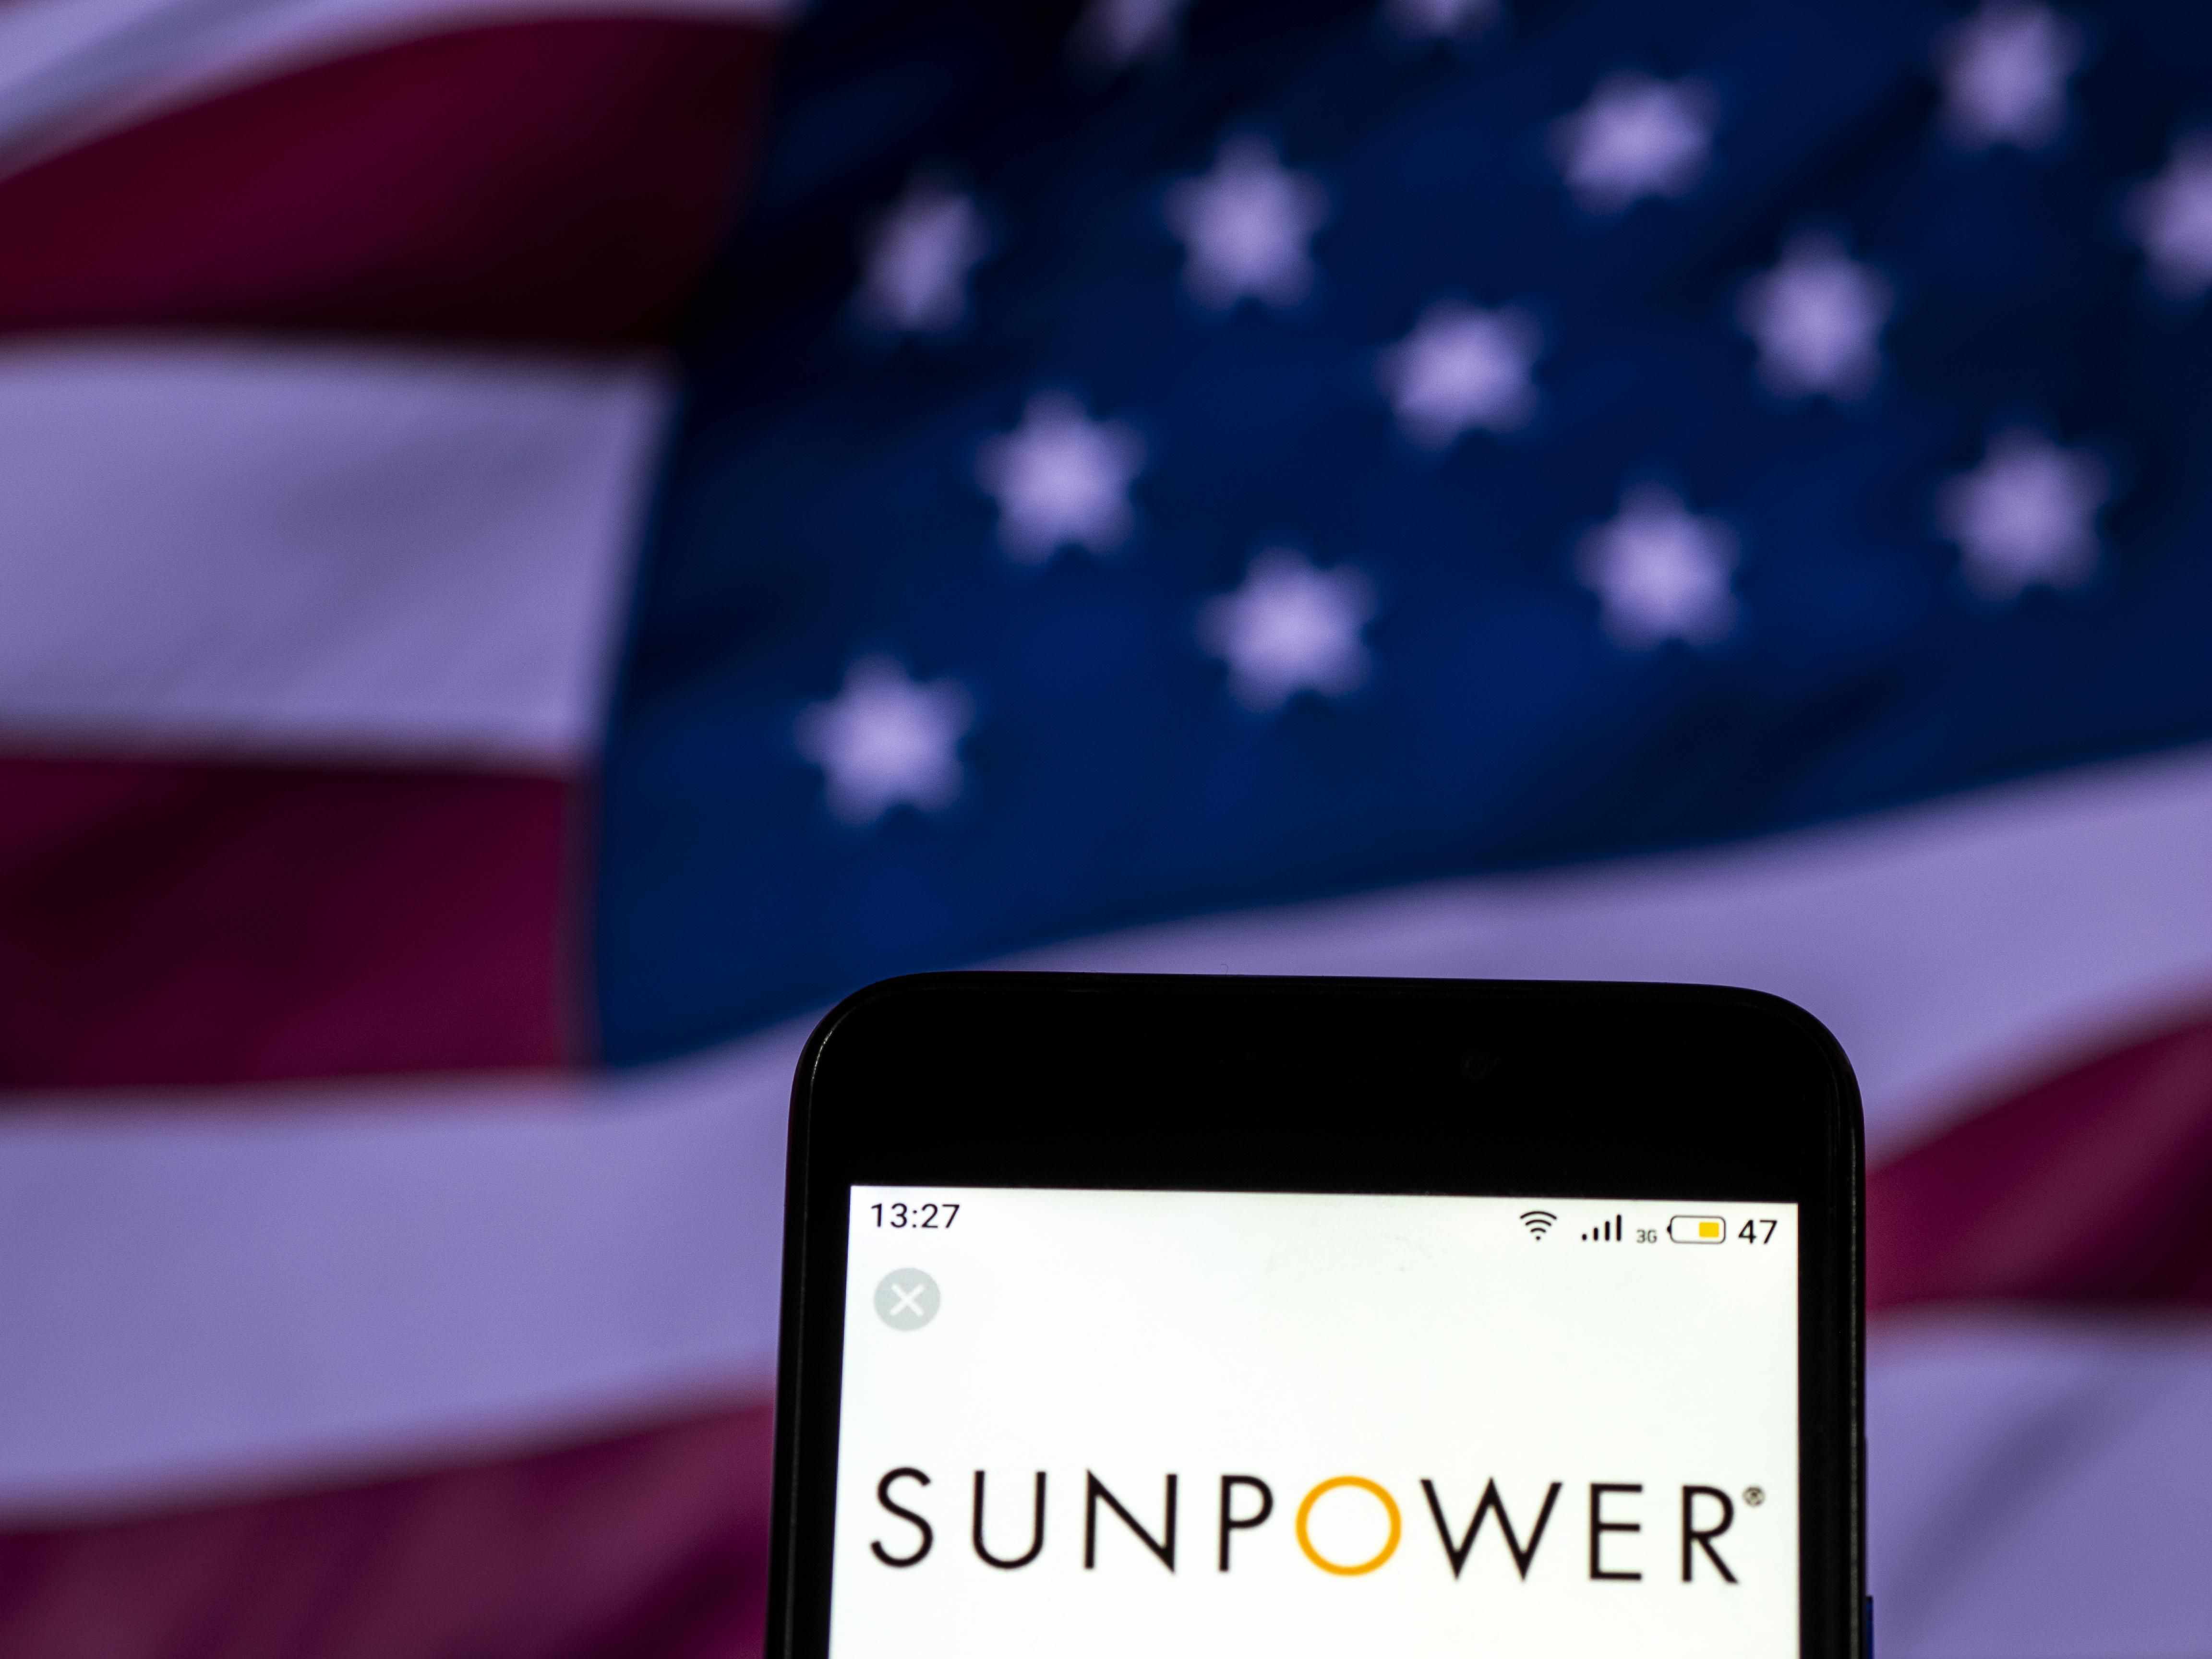 sunpower stock hit crisis